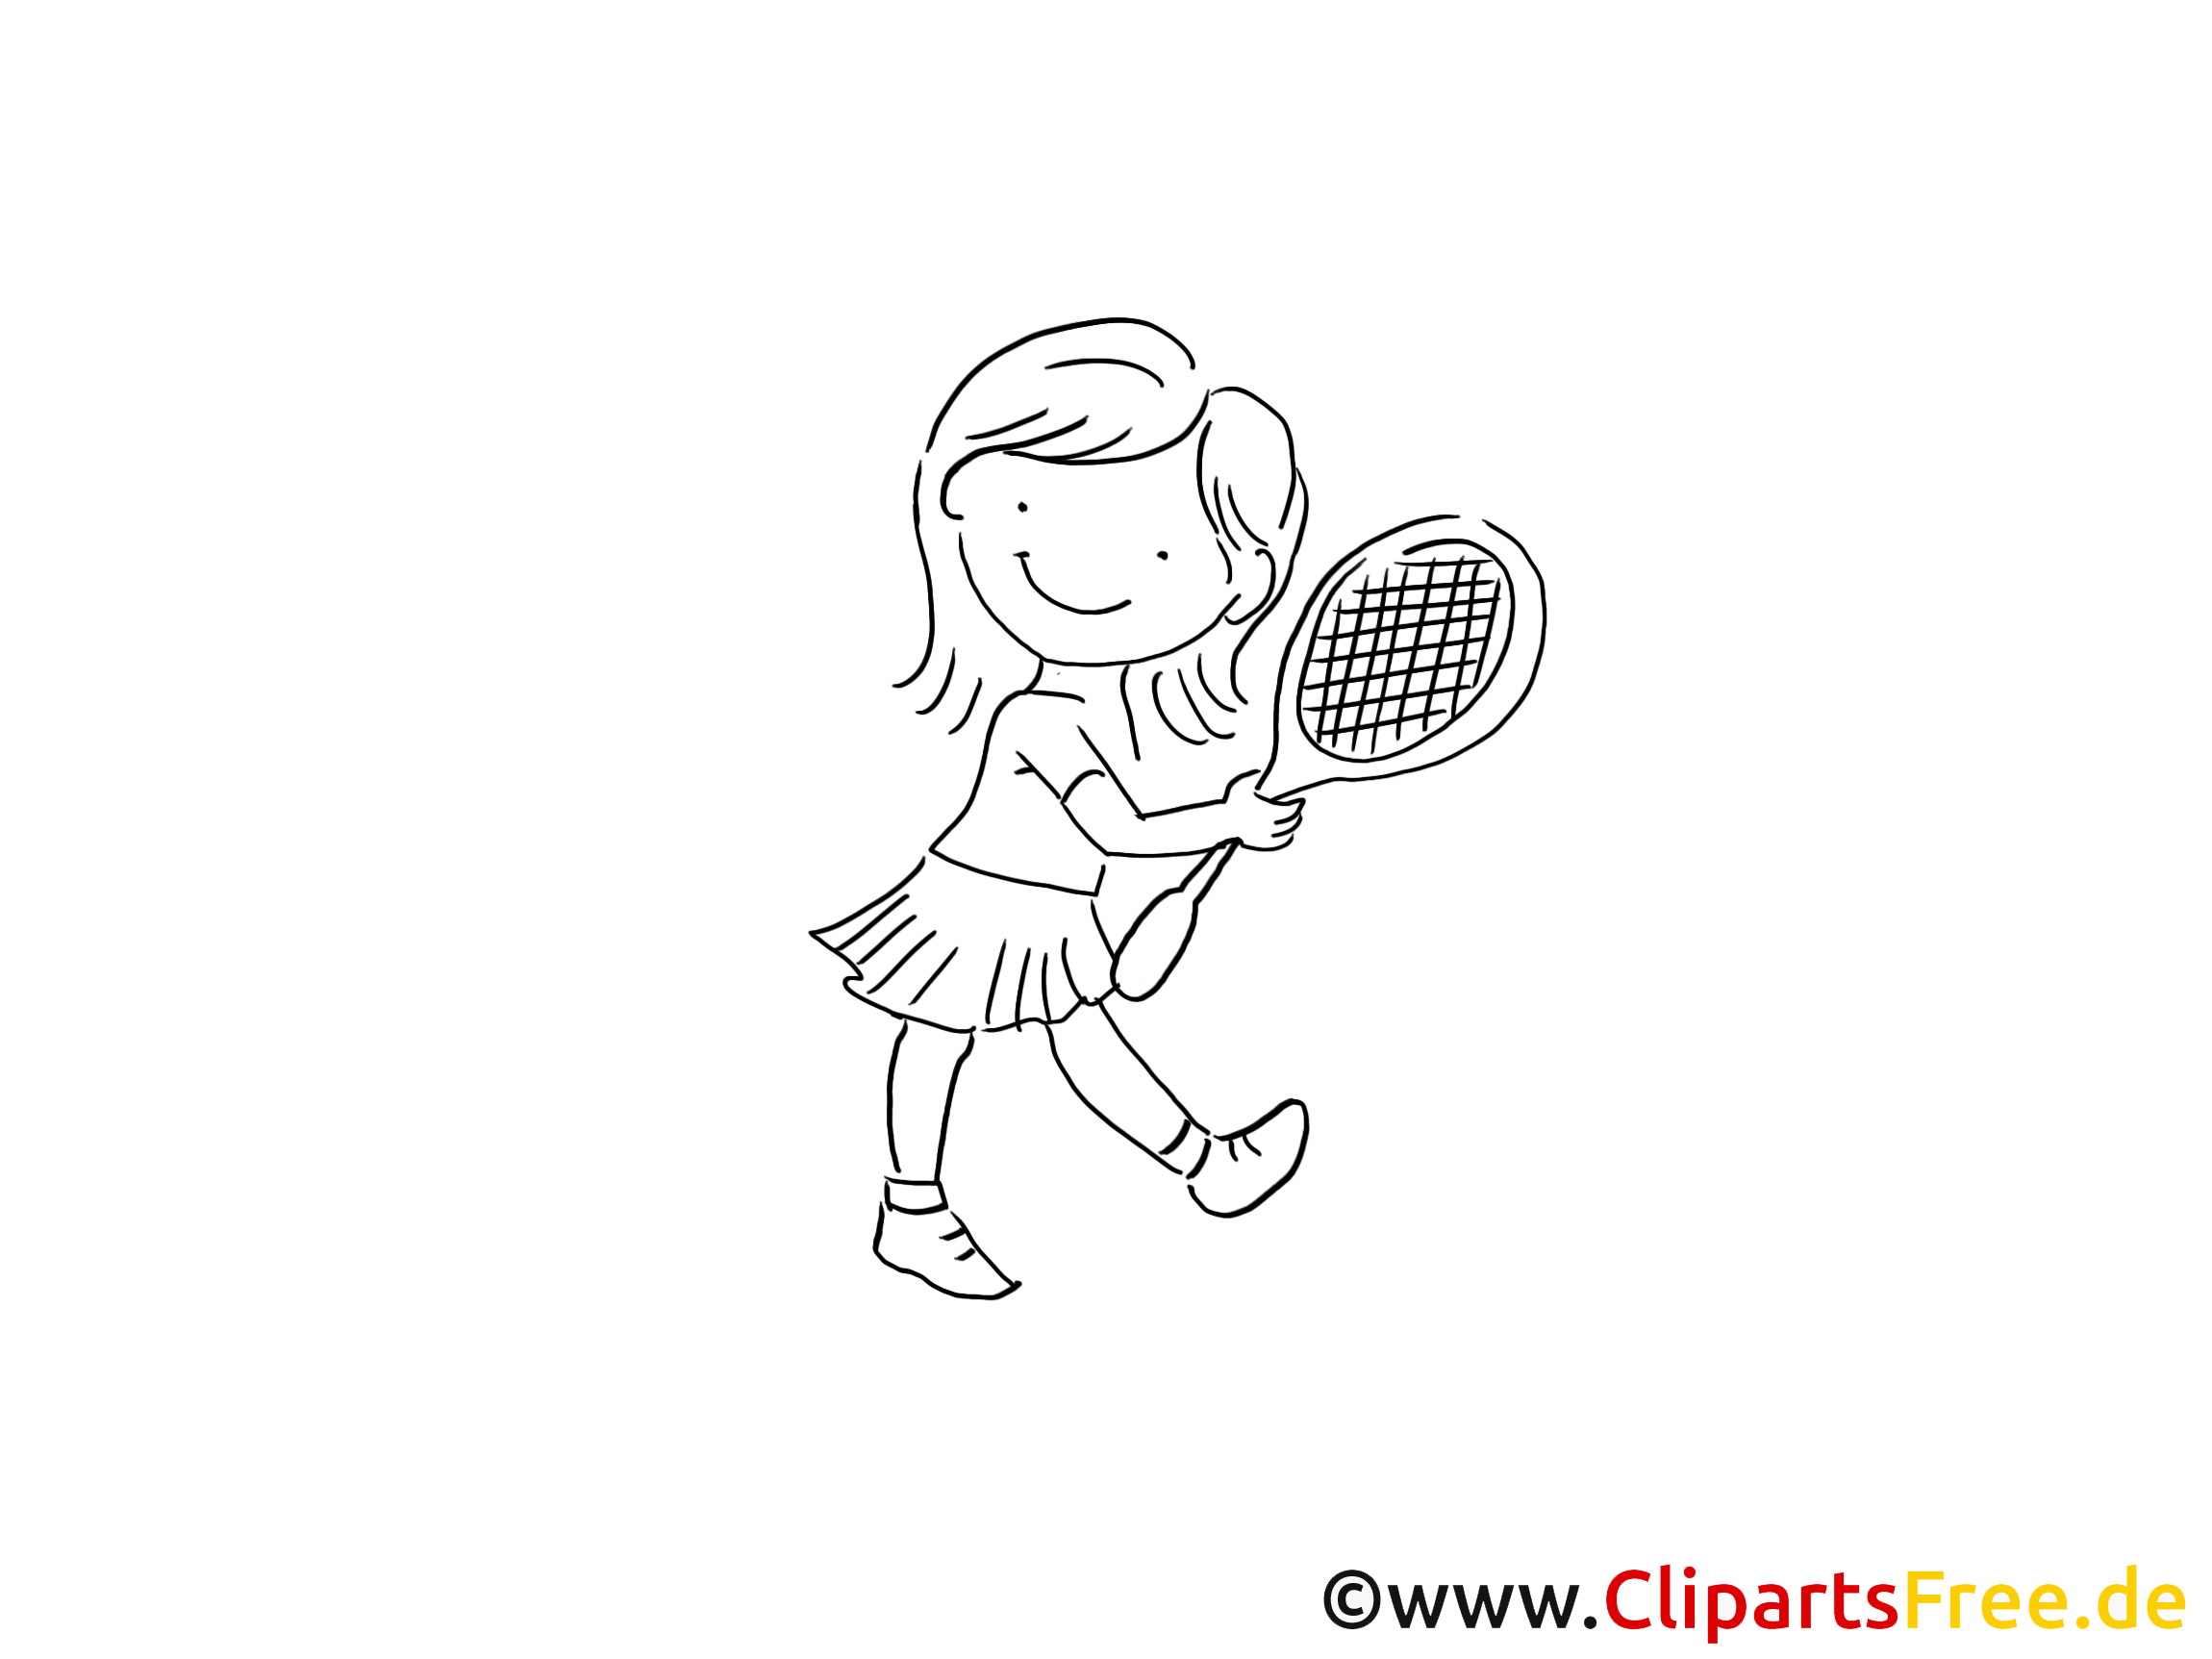 Tennis image à colorier - Enfant images cliparts